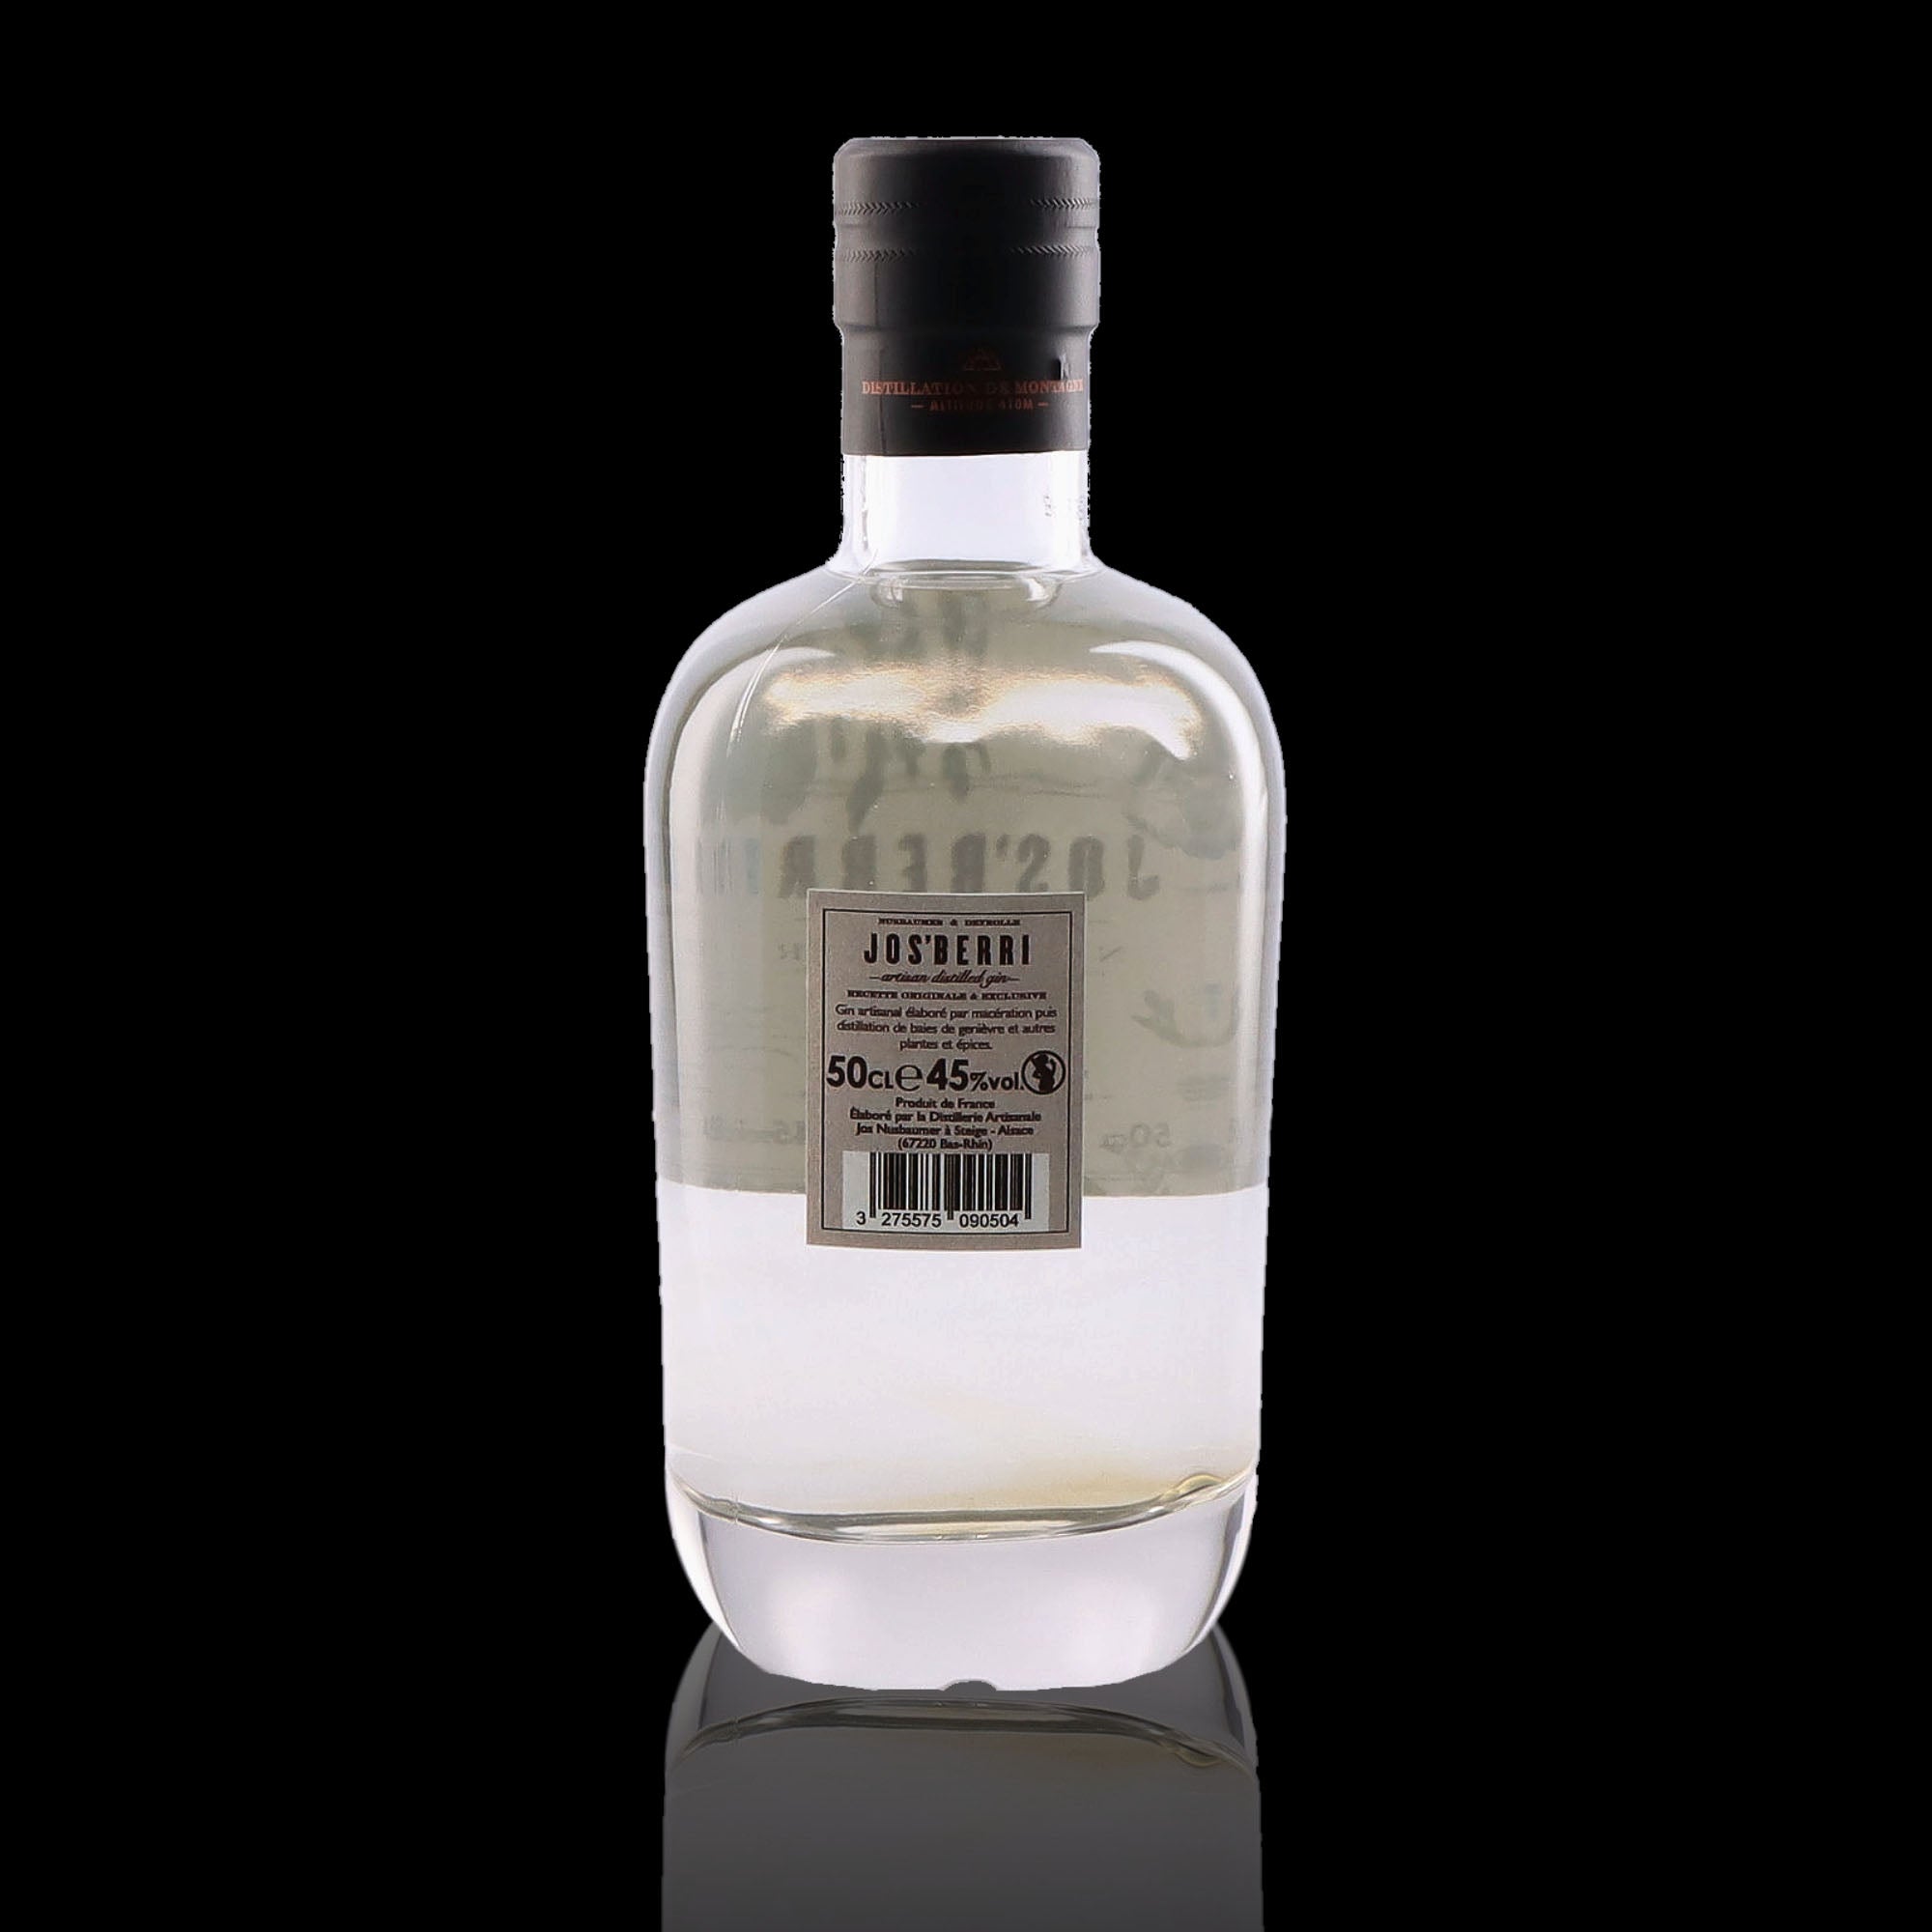 Une bouteille de Gin, de la marque Nusbaumer, nommée Jos'berri Bio.